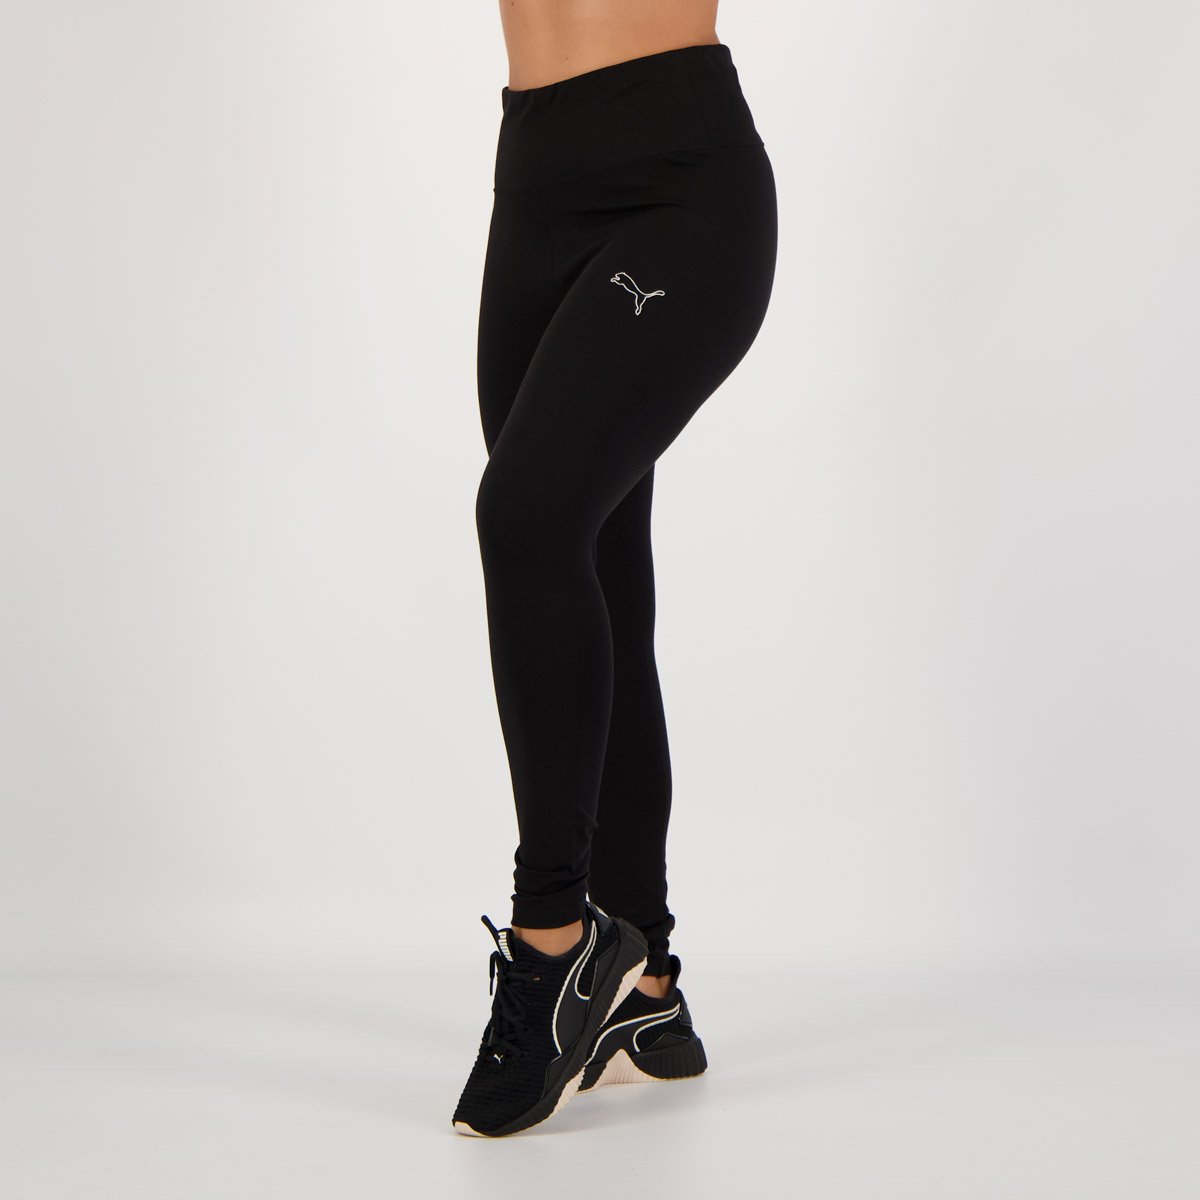 Legging feminina puma leggings REF:58683501 em Promoção na Americanas